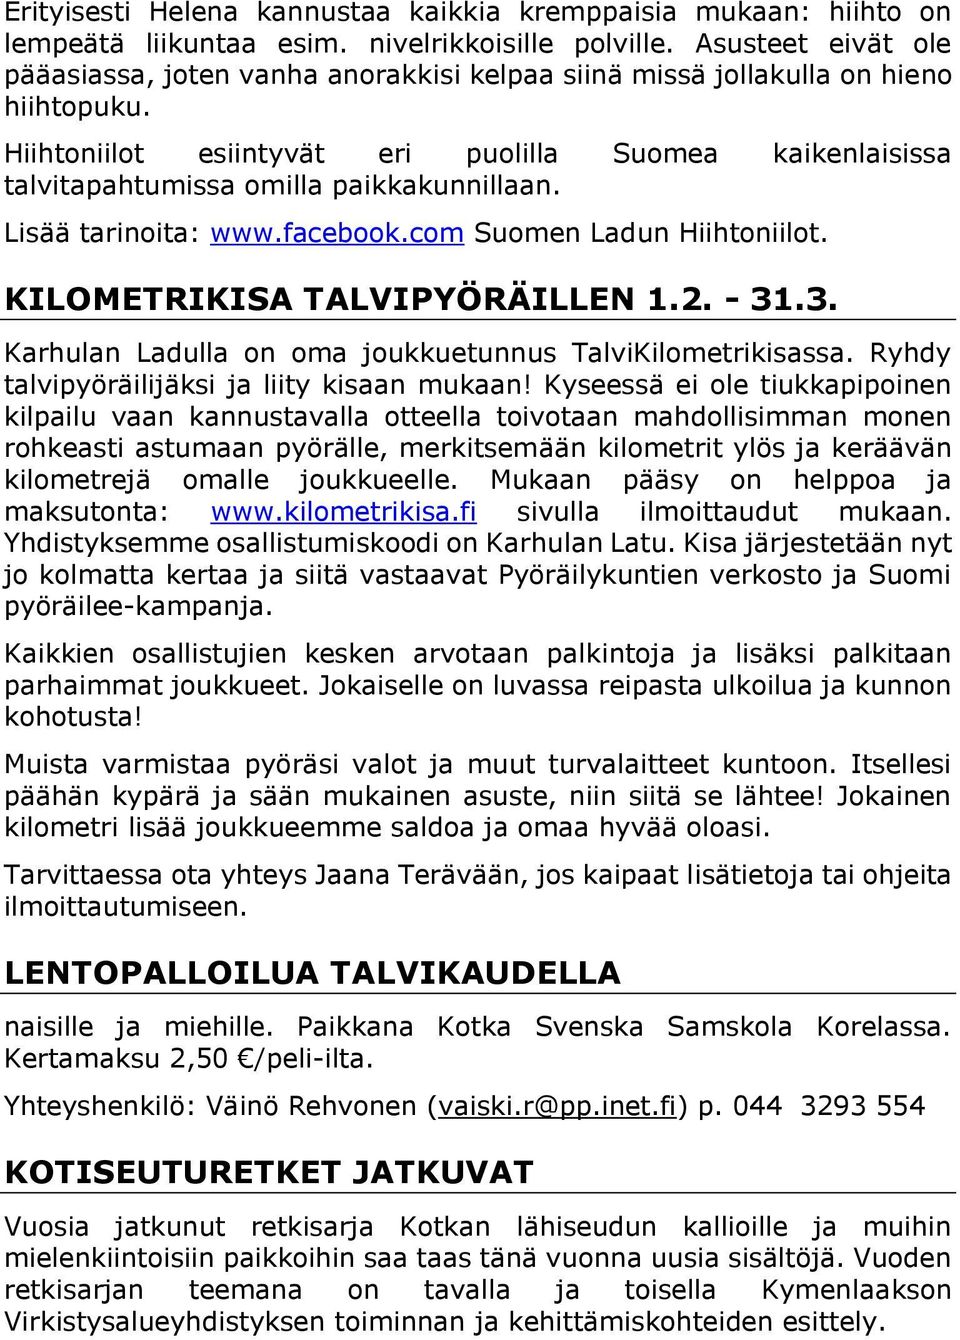 Hiihtoniilot esiintyvät eri puolilla Suomea kaikenlaisissa talvitapahtumissa omilla paikkakunnillaan. Lisää tarinoita: www.facebook.com Suomen Ladun Hiihtoniilot. KILOMETRIKISA TALVIPYÖRÄILLEN 1.2.